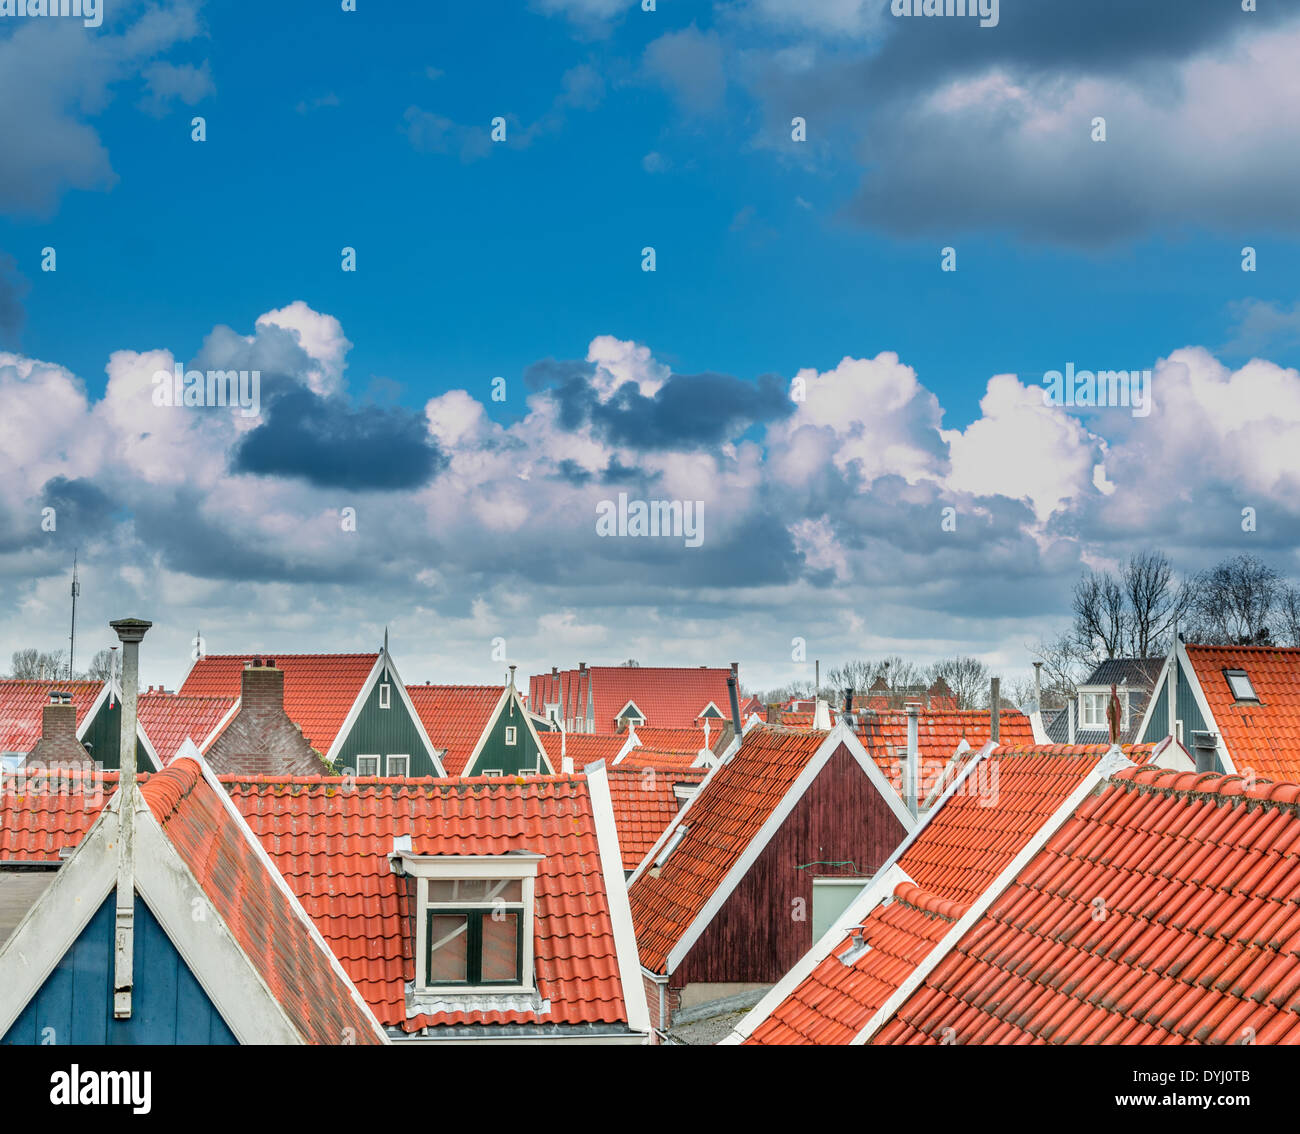 Nuages dans un beau ciel bleu accrocher au-dessus de toits de tuiles rouges dans une ville néerlandaise, le nord de la Hollande. Banque D'Images